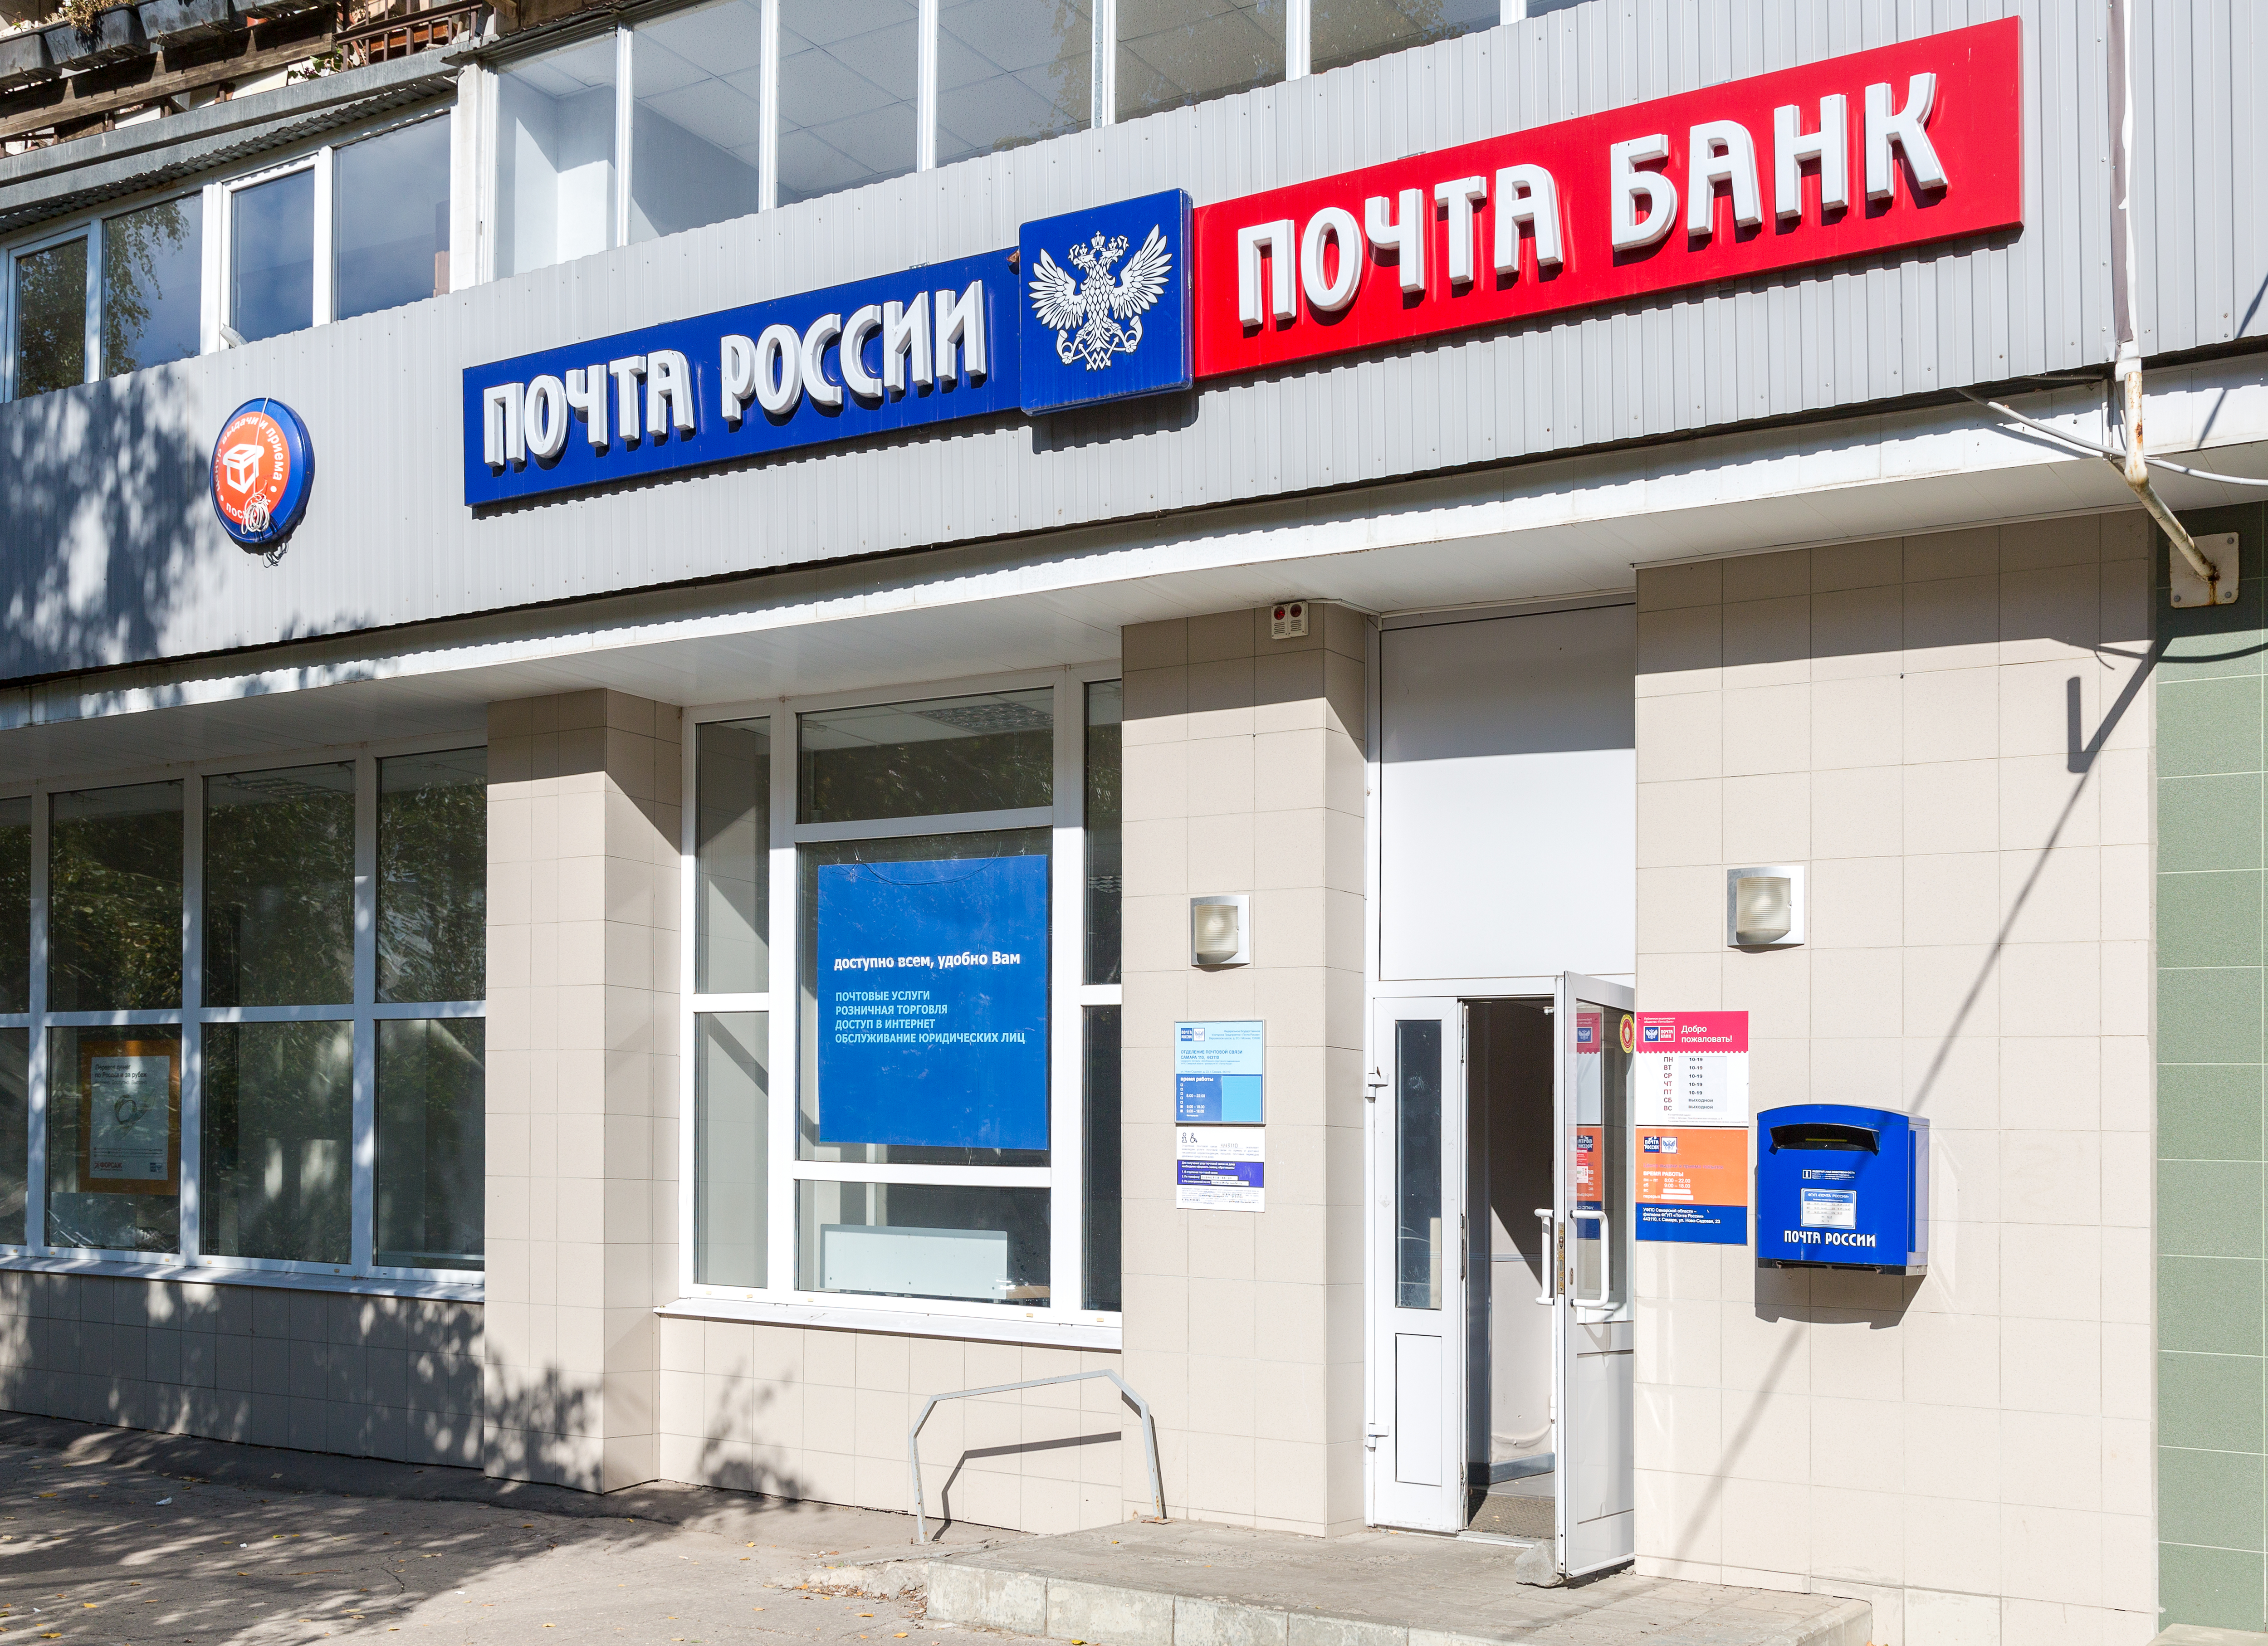 Почта России почта банк вывеска